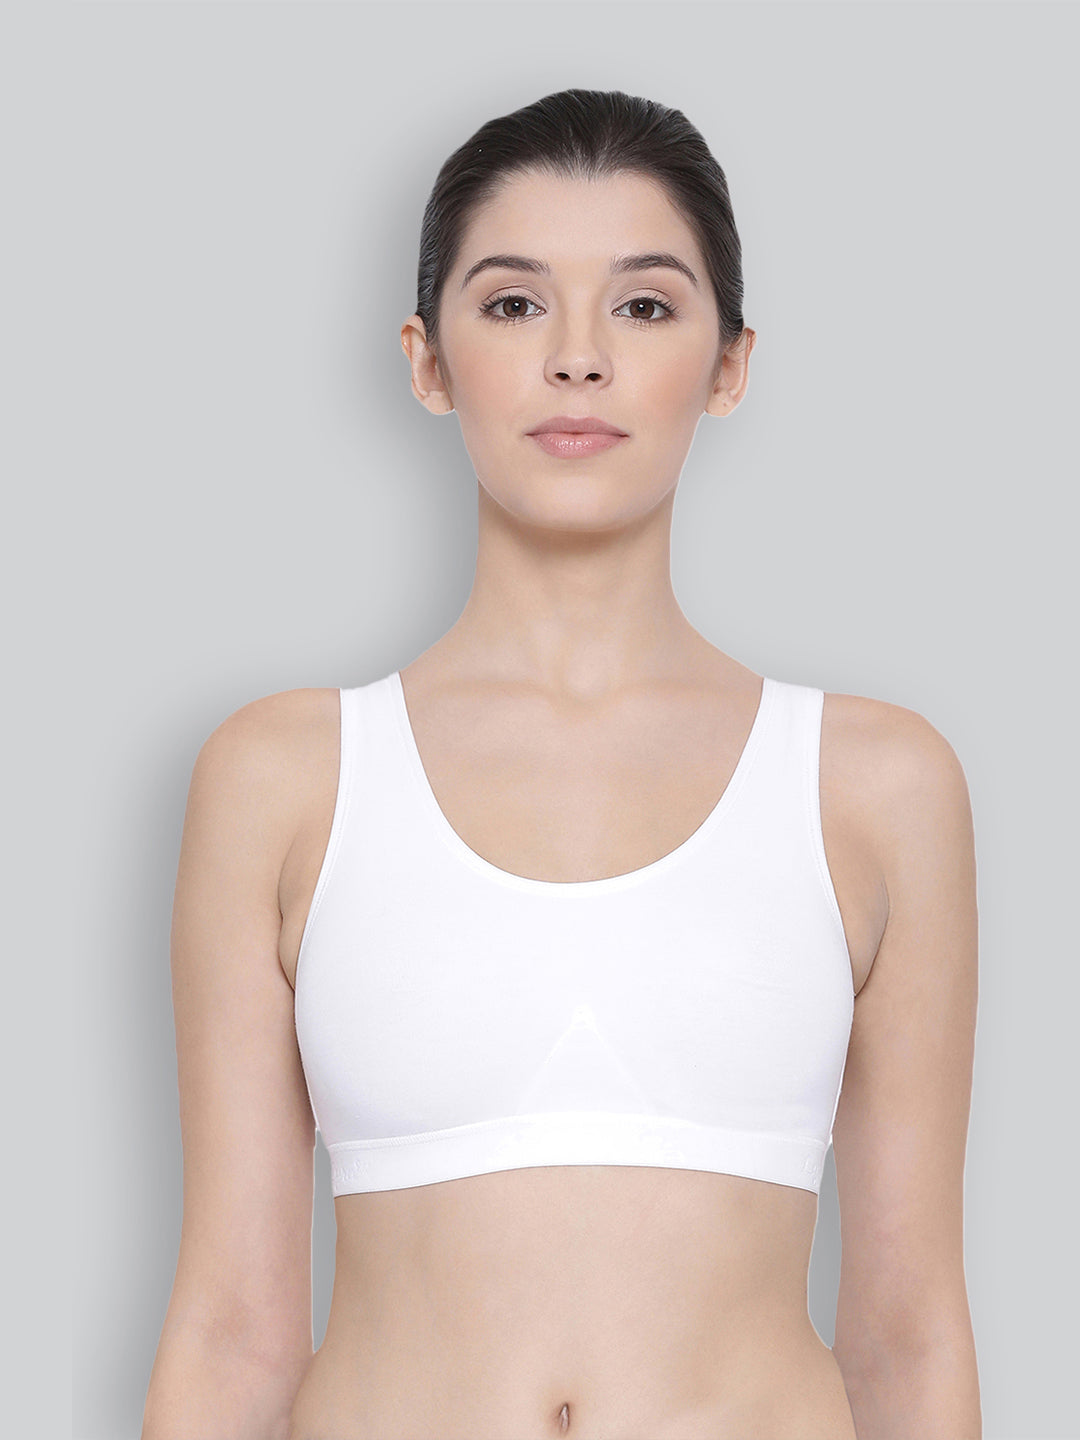 Buy Lyra Women's Casual Bra Beginners 1pc_White_XS at